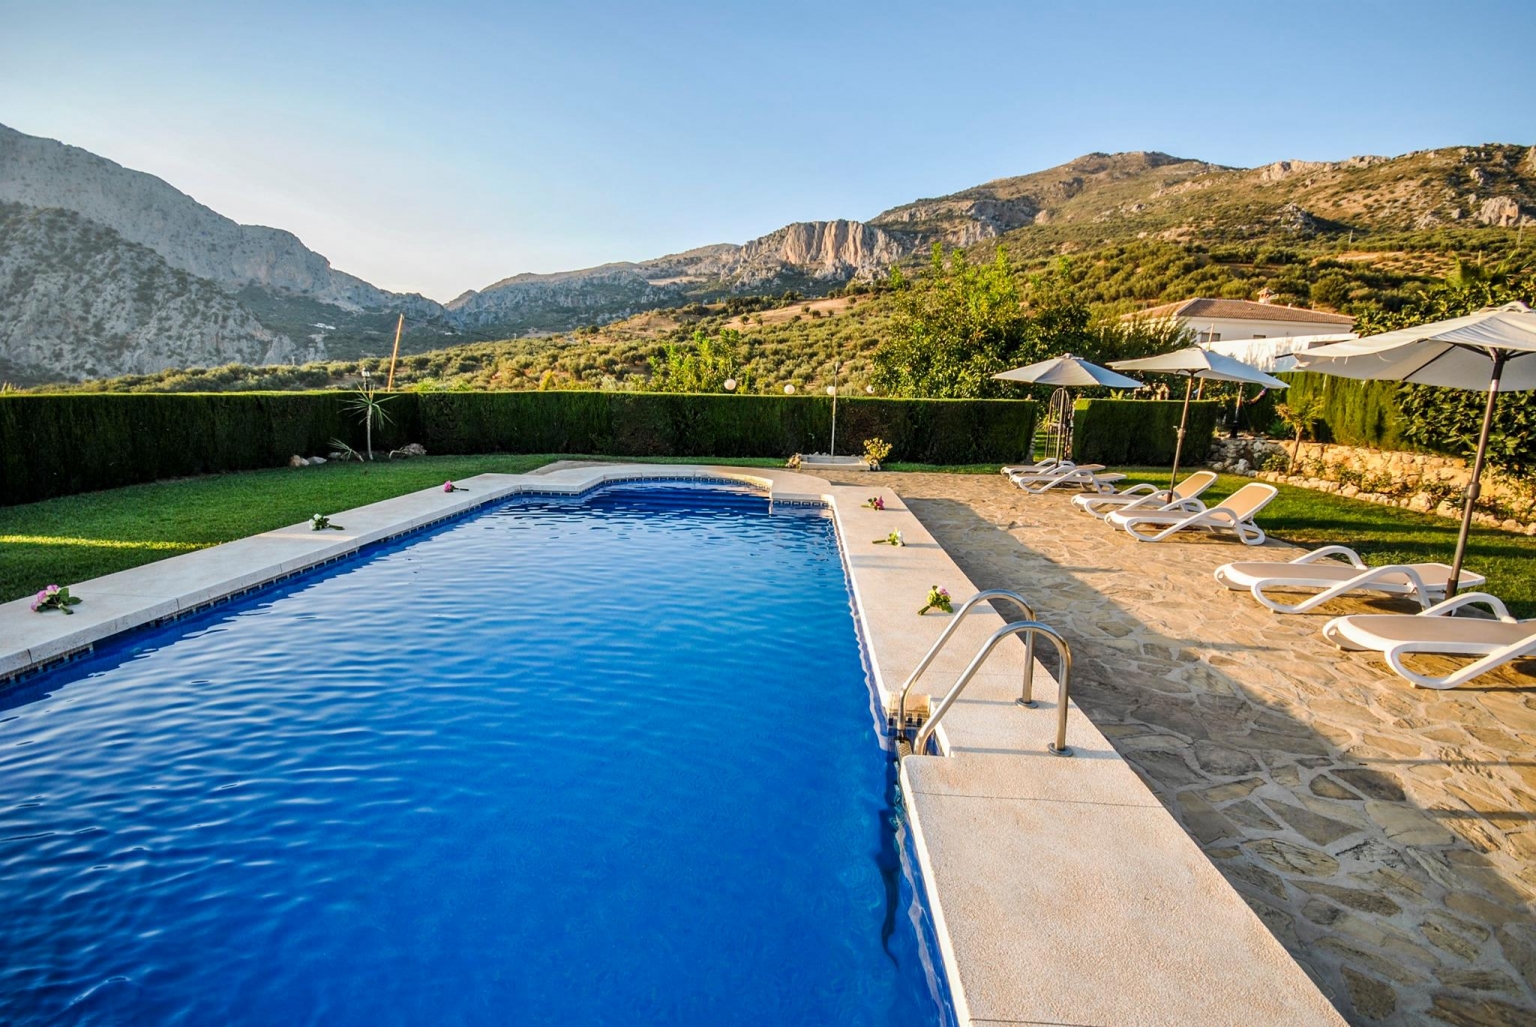 Vista a la montaña de Alfarnatejo desde la piscina del alojamiento rural Cortijo Las Monjas, Alta Axarquía de Málaga interior, Costa del Sol. Andalucía